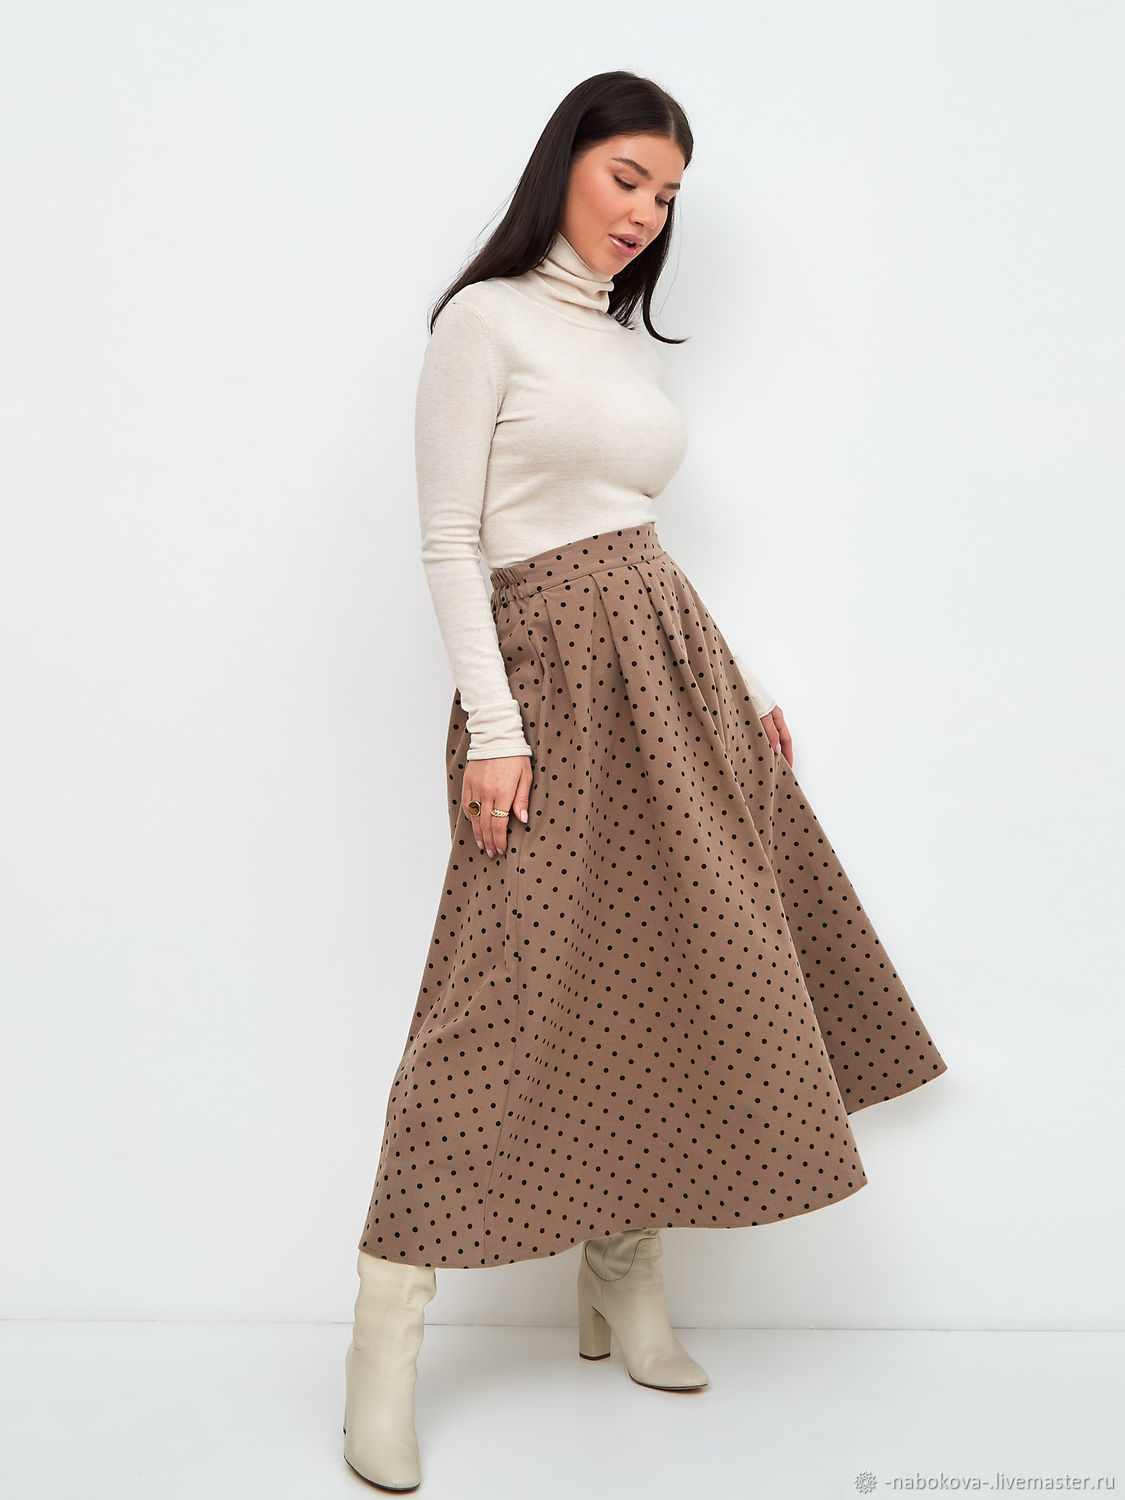 Polka Dot Cotton Midi Length Skirt, Skirts, Moscow,  Фото №1